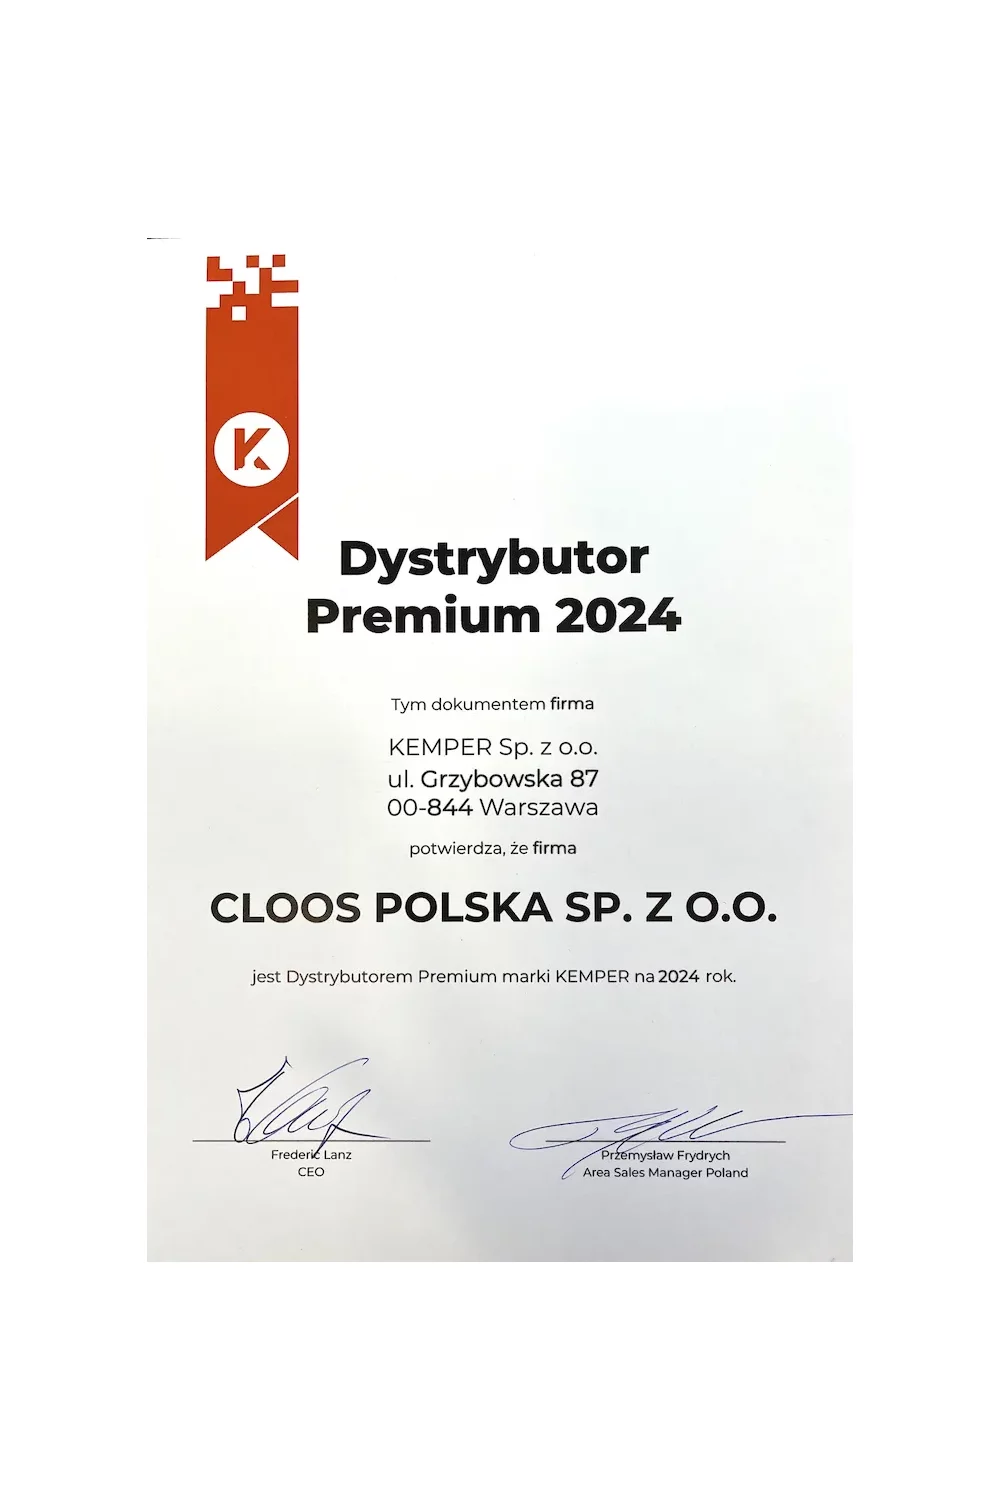 Wyróżnienie Dystrybutor Premium 2024 - zdjęcie